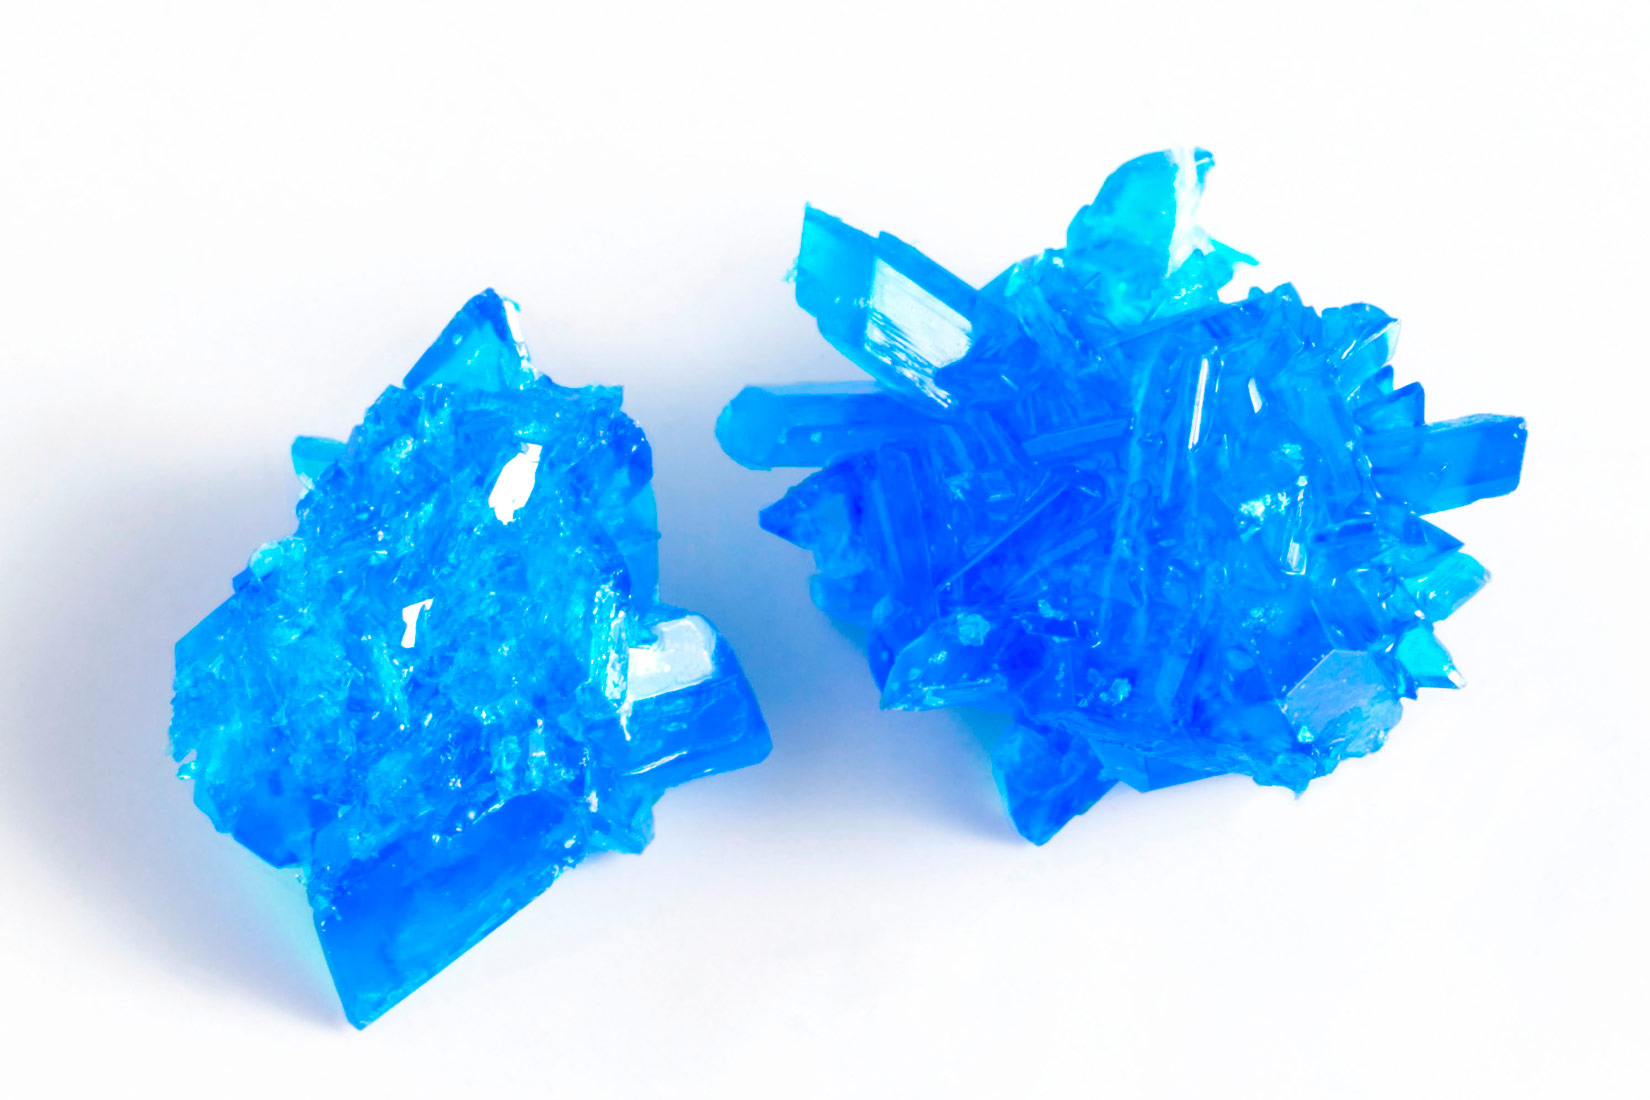 Fotografija prikazuje dva grumena modre galice. Vrlo su nepravlina oblika i oštro nazubljeni.